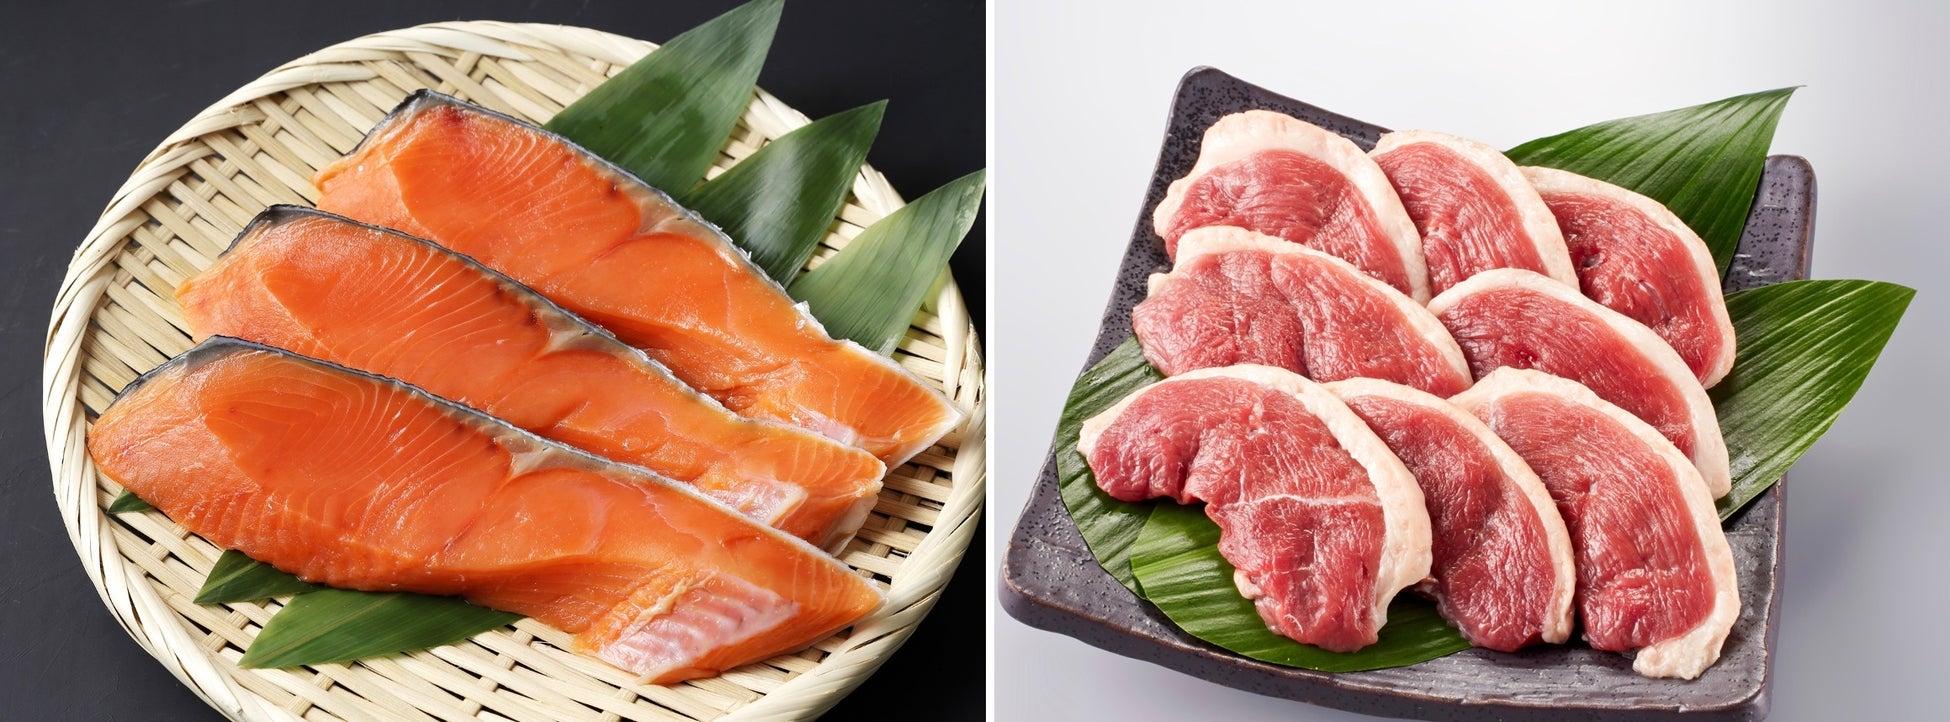 食卓にお店の味を！大阪の人気飲食店ブランドが手掛ける食品ブランドがスタート。第一弾は国産養殖の「銀鮭」と「合鴨」のサブ画像1